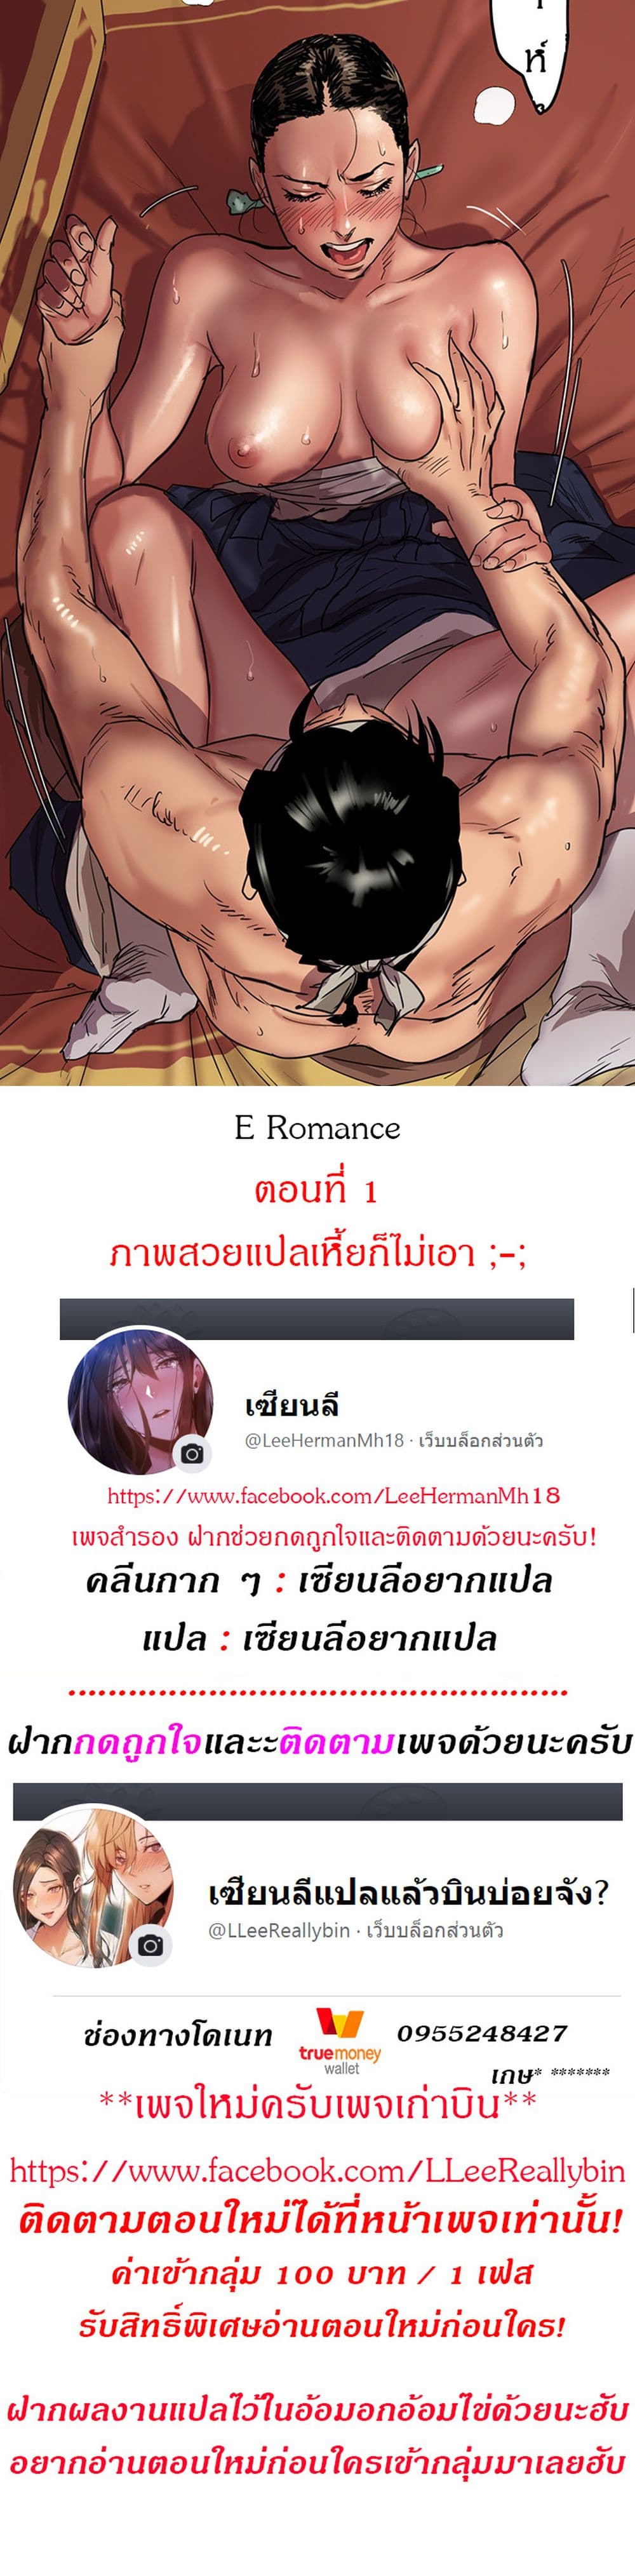 E Romance 1-1